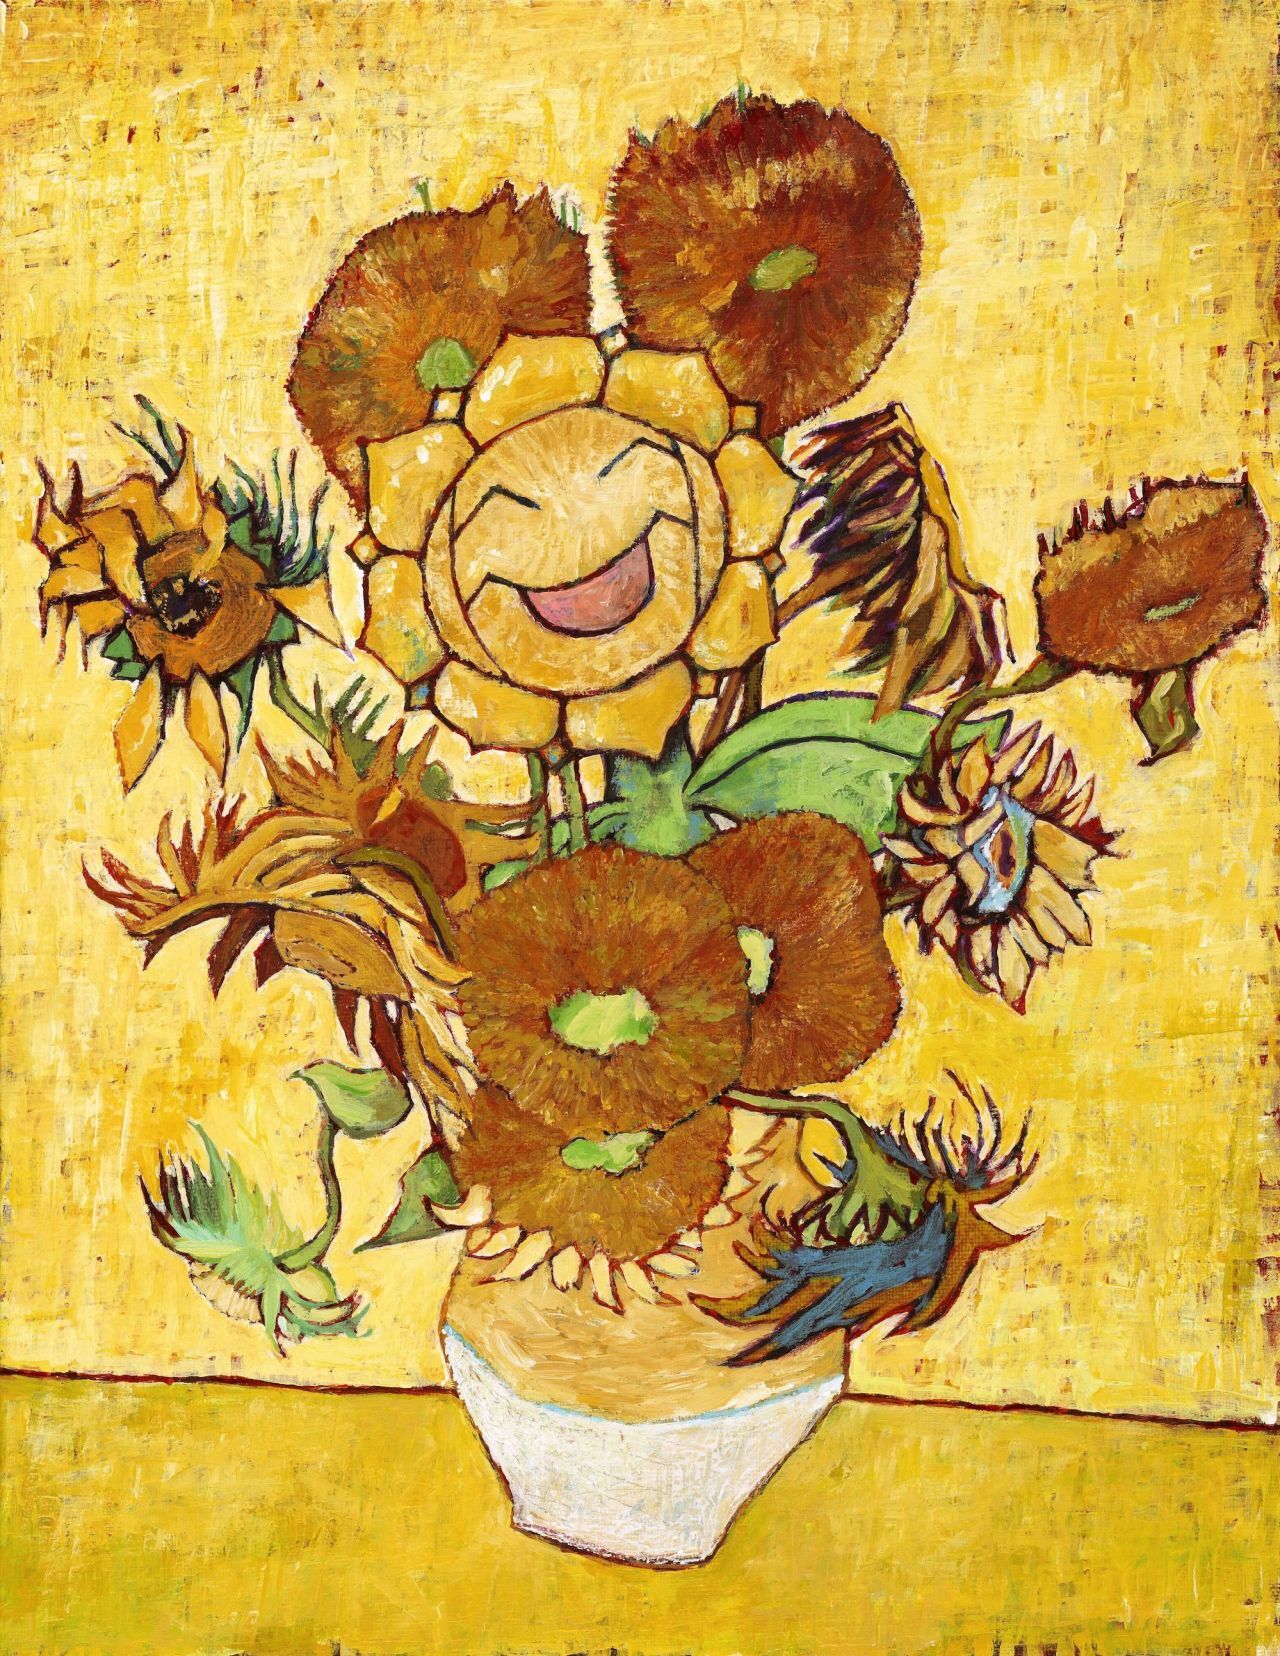 展覧会は来年１月まで開催される/Courtesy Van Gogh Museum